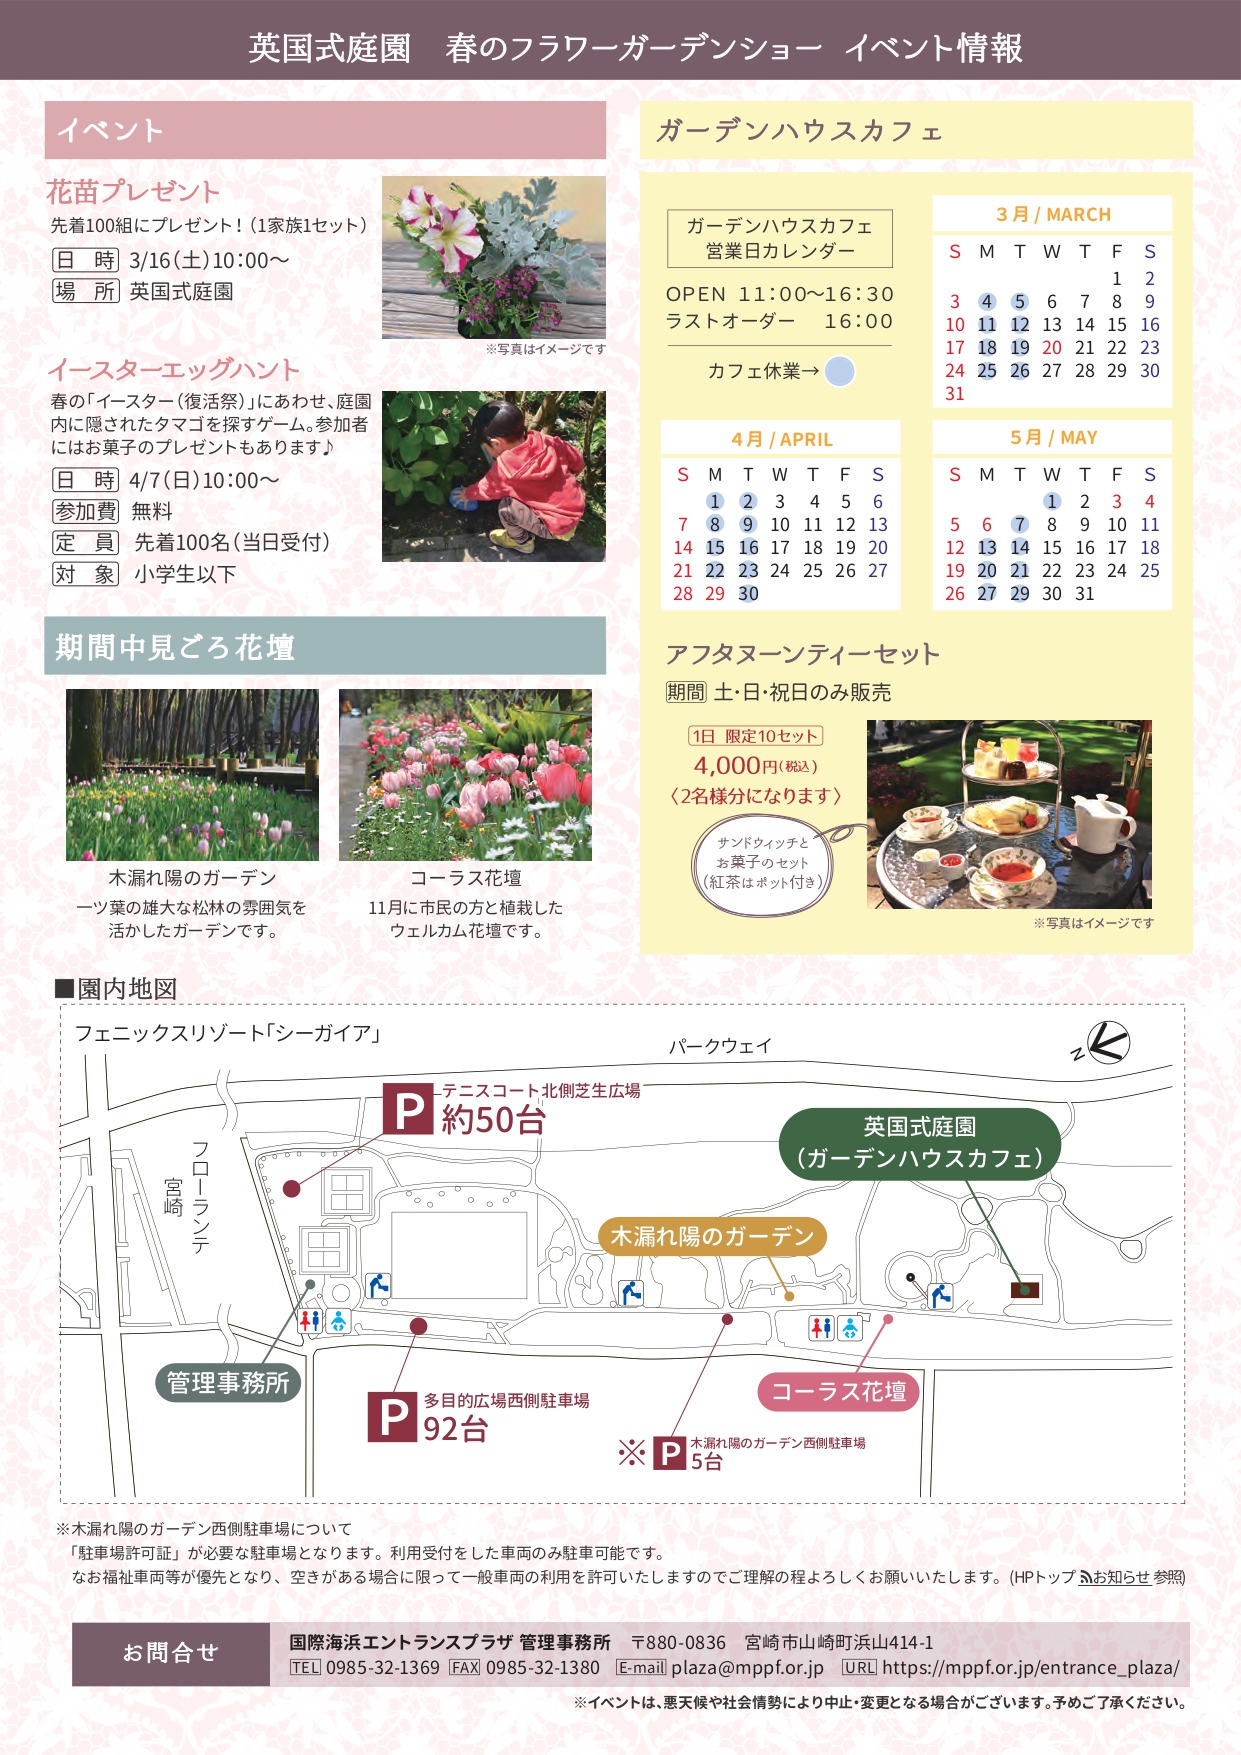 宮崎市イベント 英国式庭園 春のフラワーガーデンショー 画像2